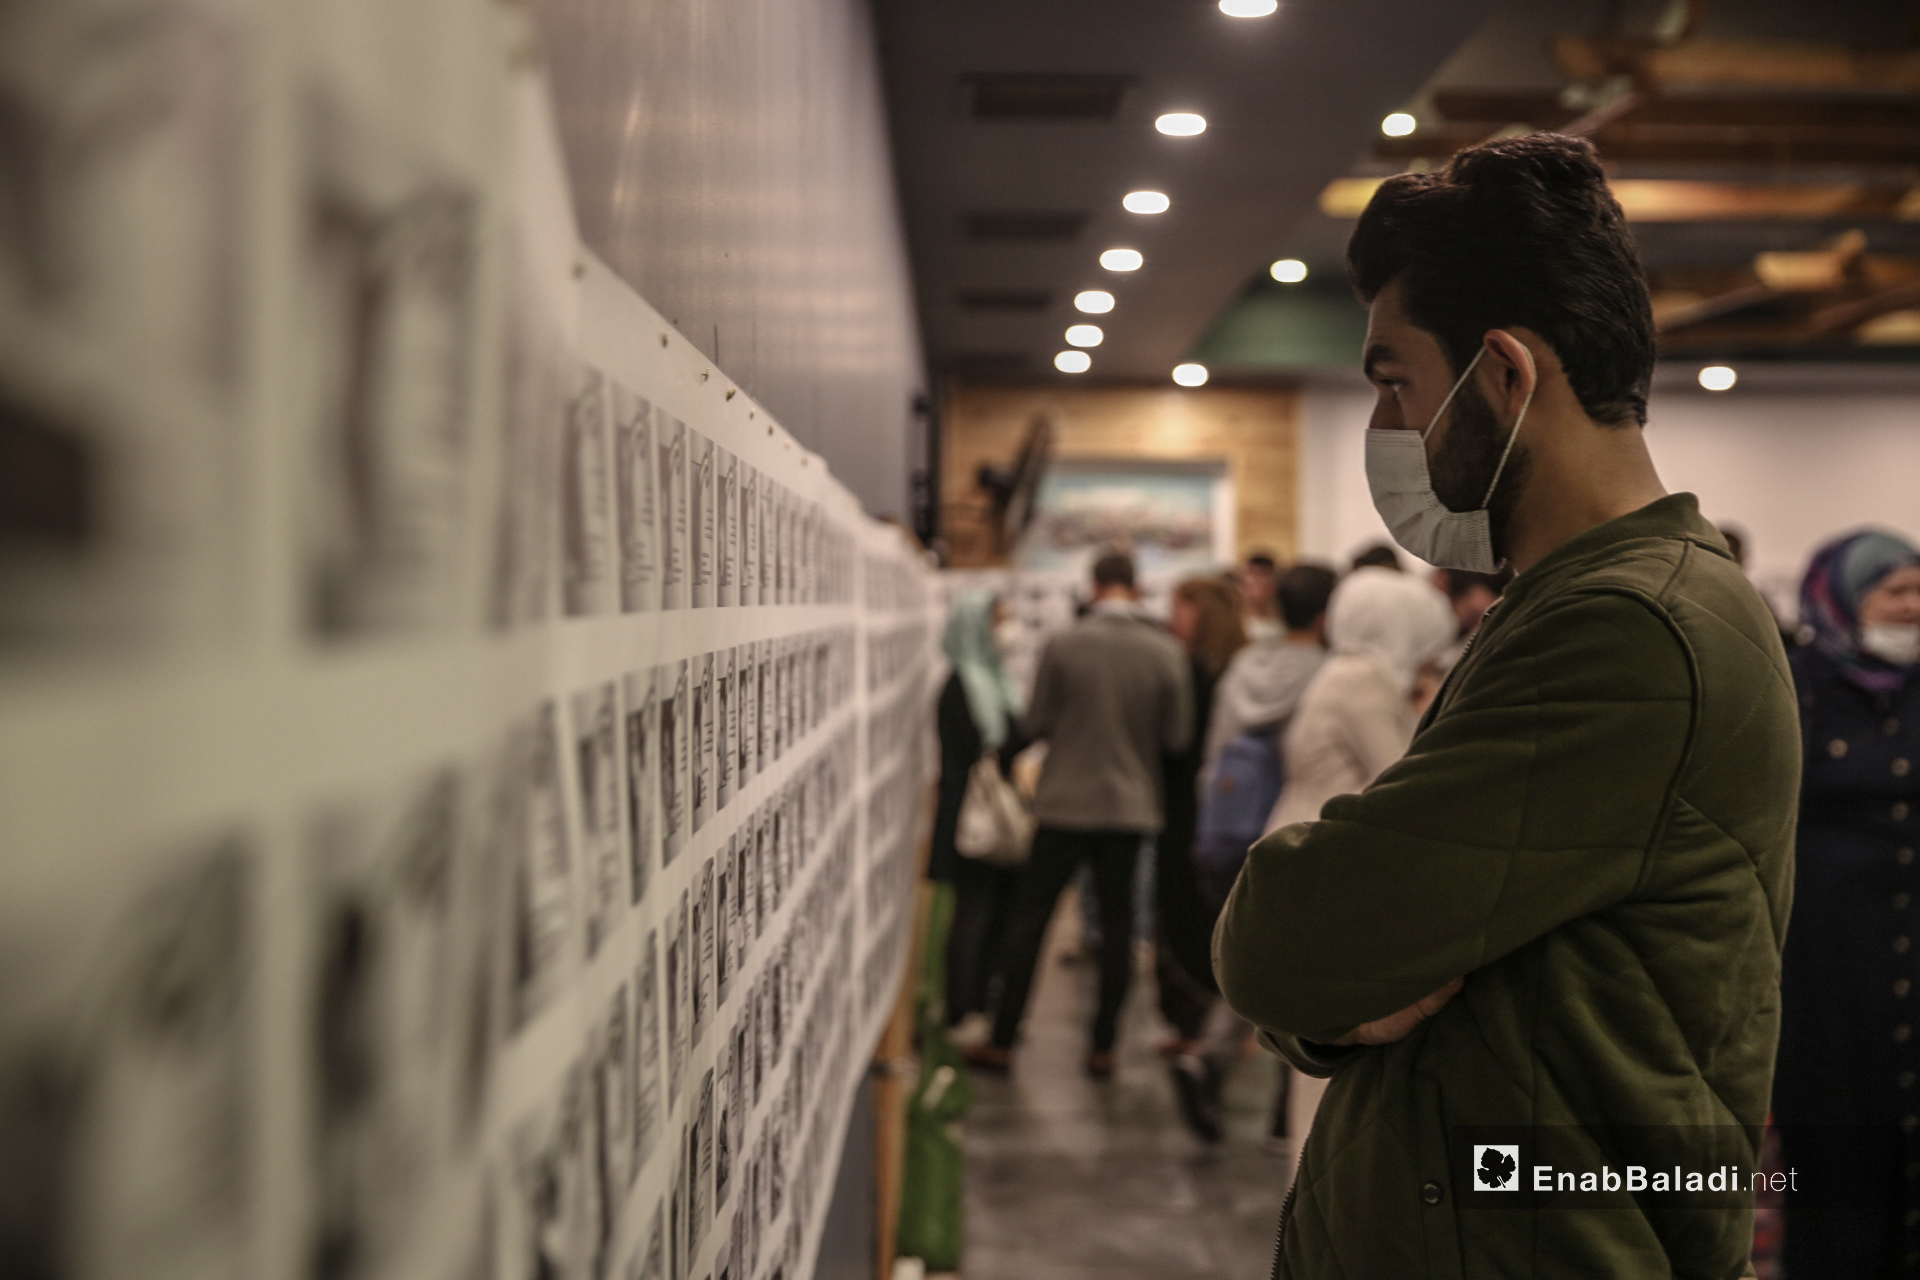 شاب ينظر إلى صور ضحايا أطفال سوريين في معرض "سُكّان الذاكرة"
الذي يوثق بالصور والأسماء والتواريخ 4600 طفل سوري على لوحة طولها 70 متر في إسطنبول - 13 تشرين الأول (عنب بلدي/ عبد المعين حمص)
